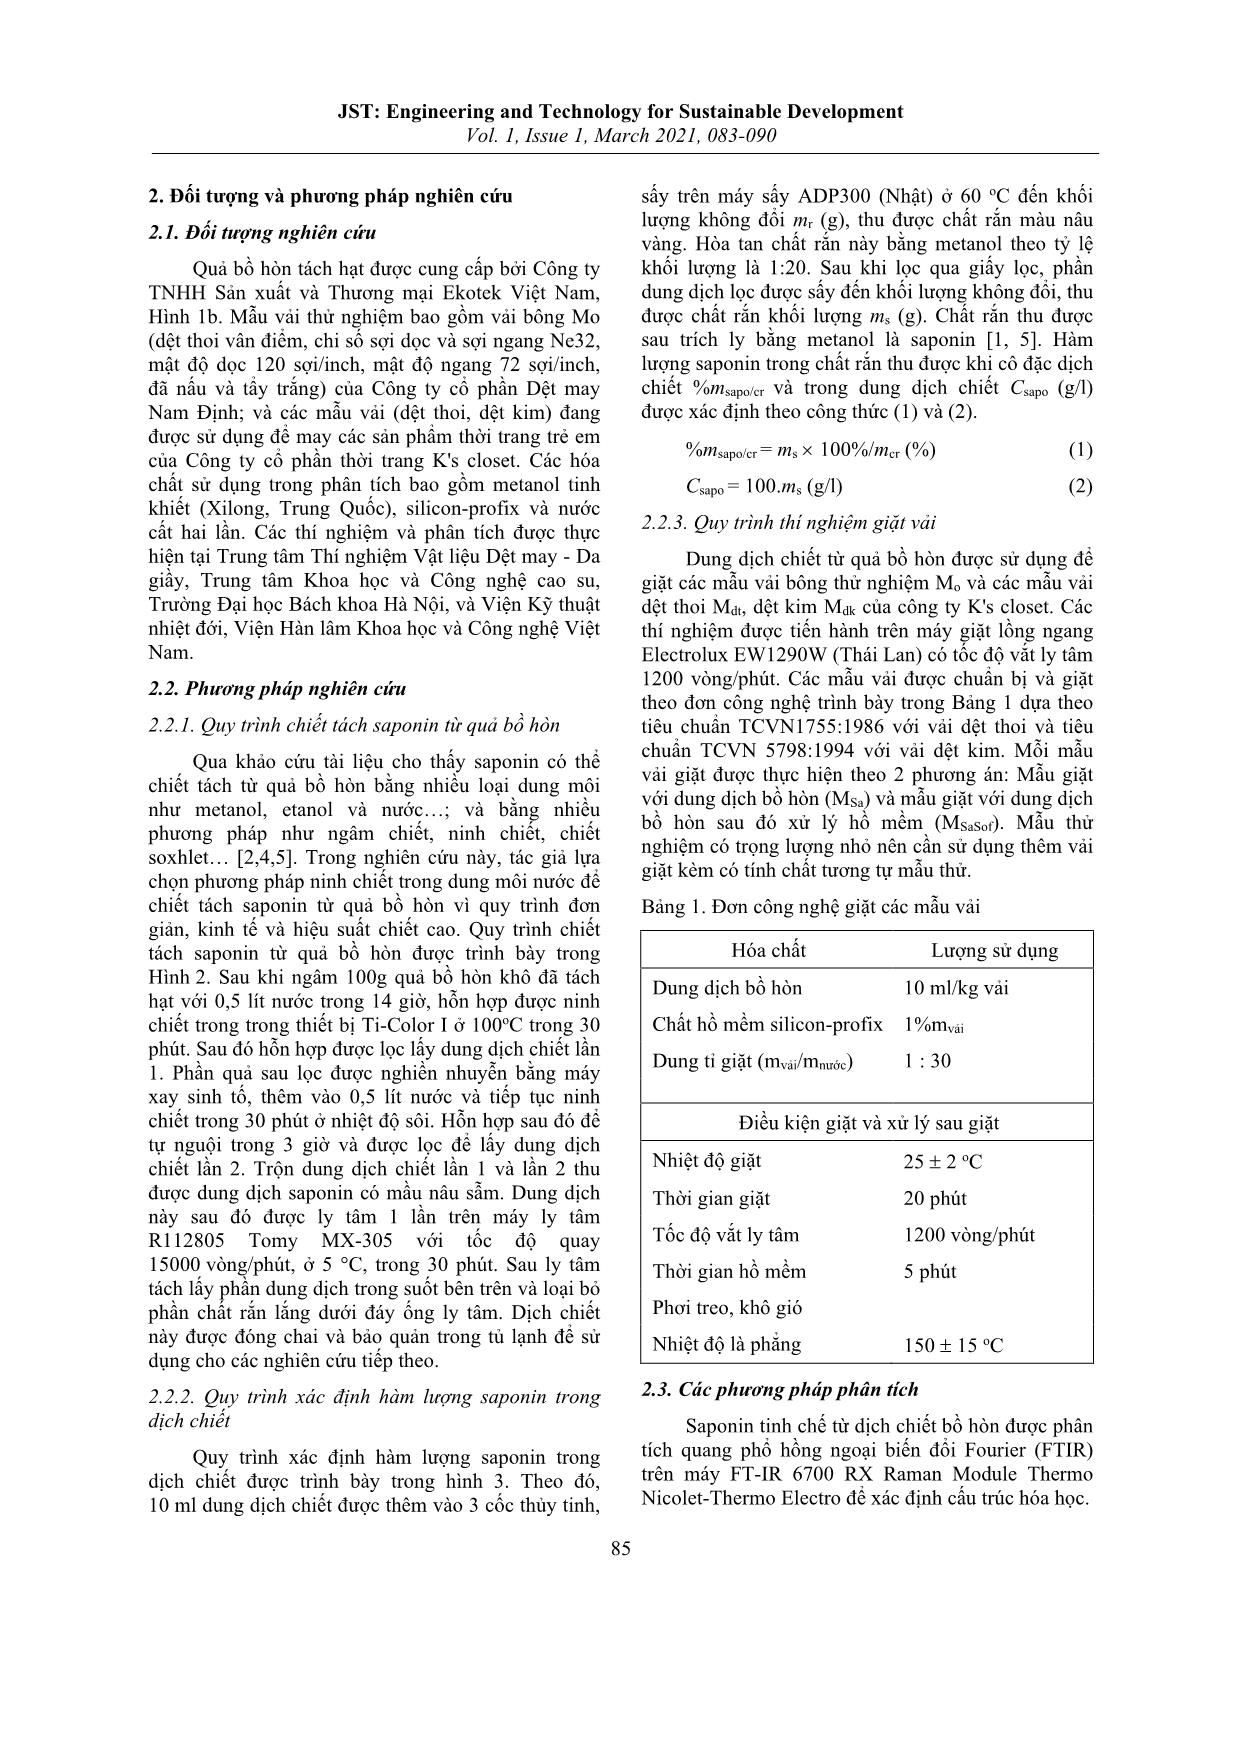 Nghiên cứu sự thay đổi một số tính chất của vải bông sau khi giặt bằng dịch chiết từ quả bồ hòn Việt Nam trang 3